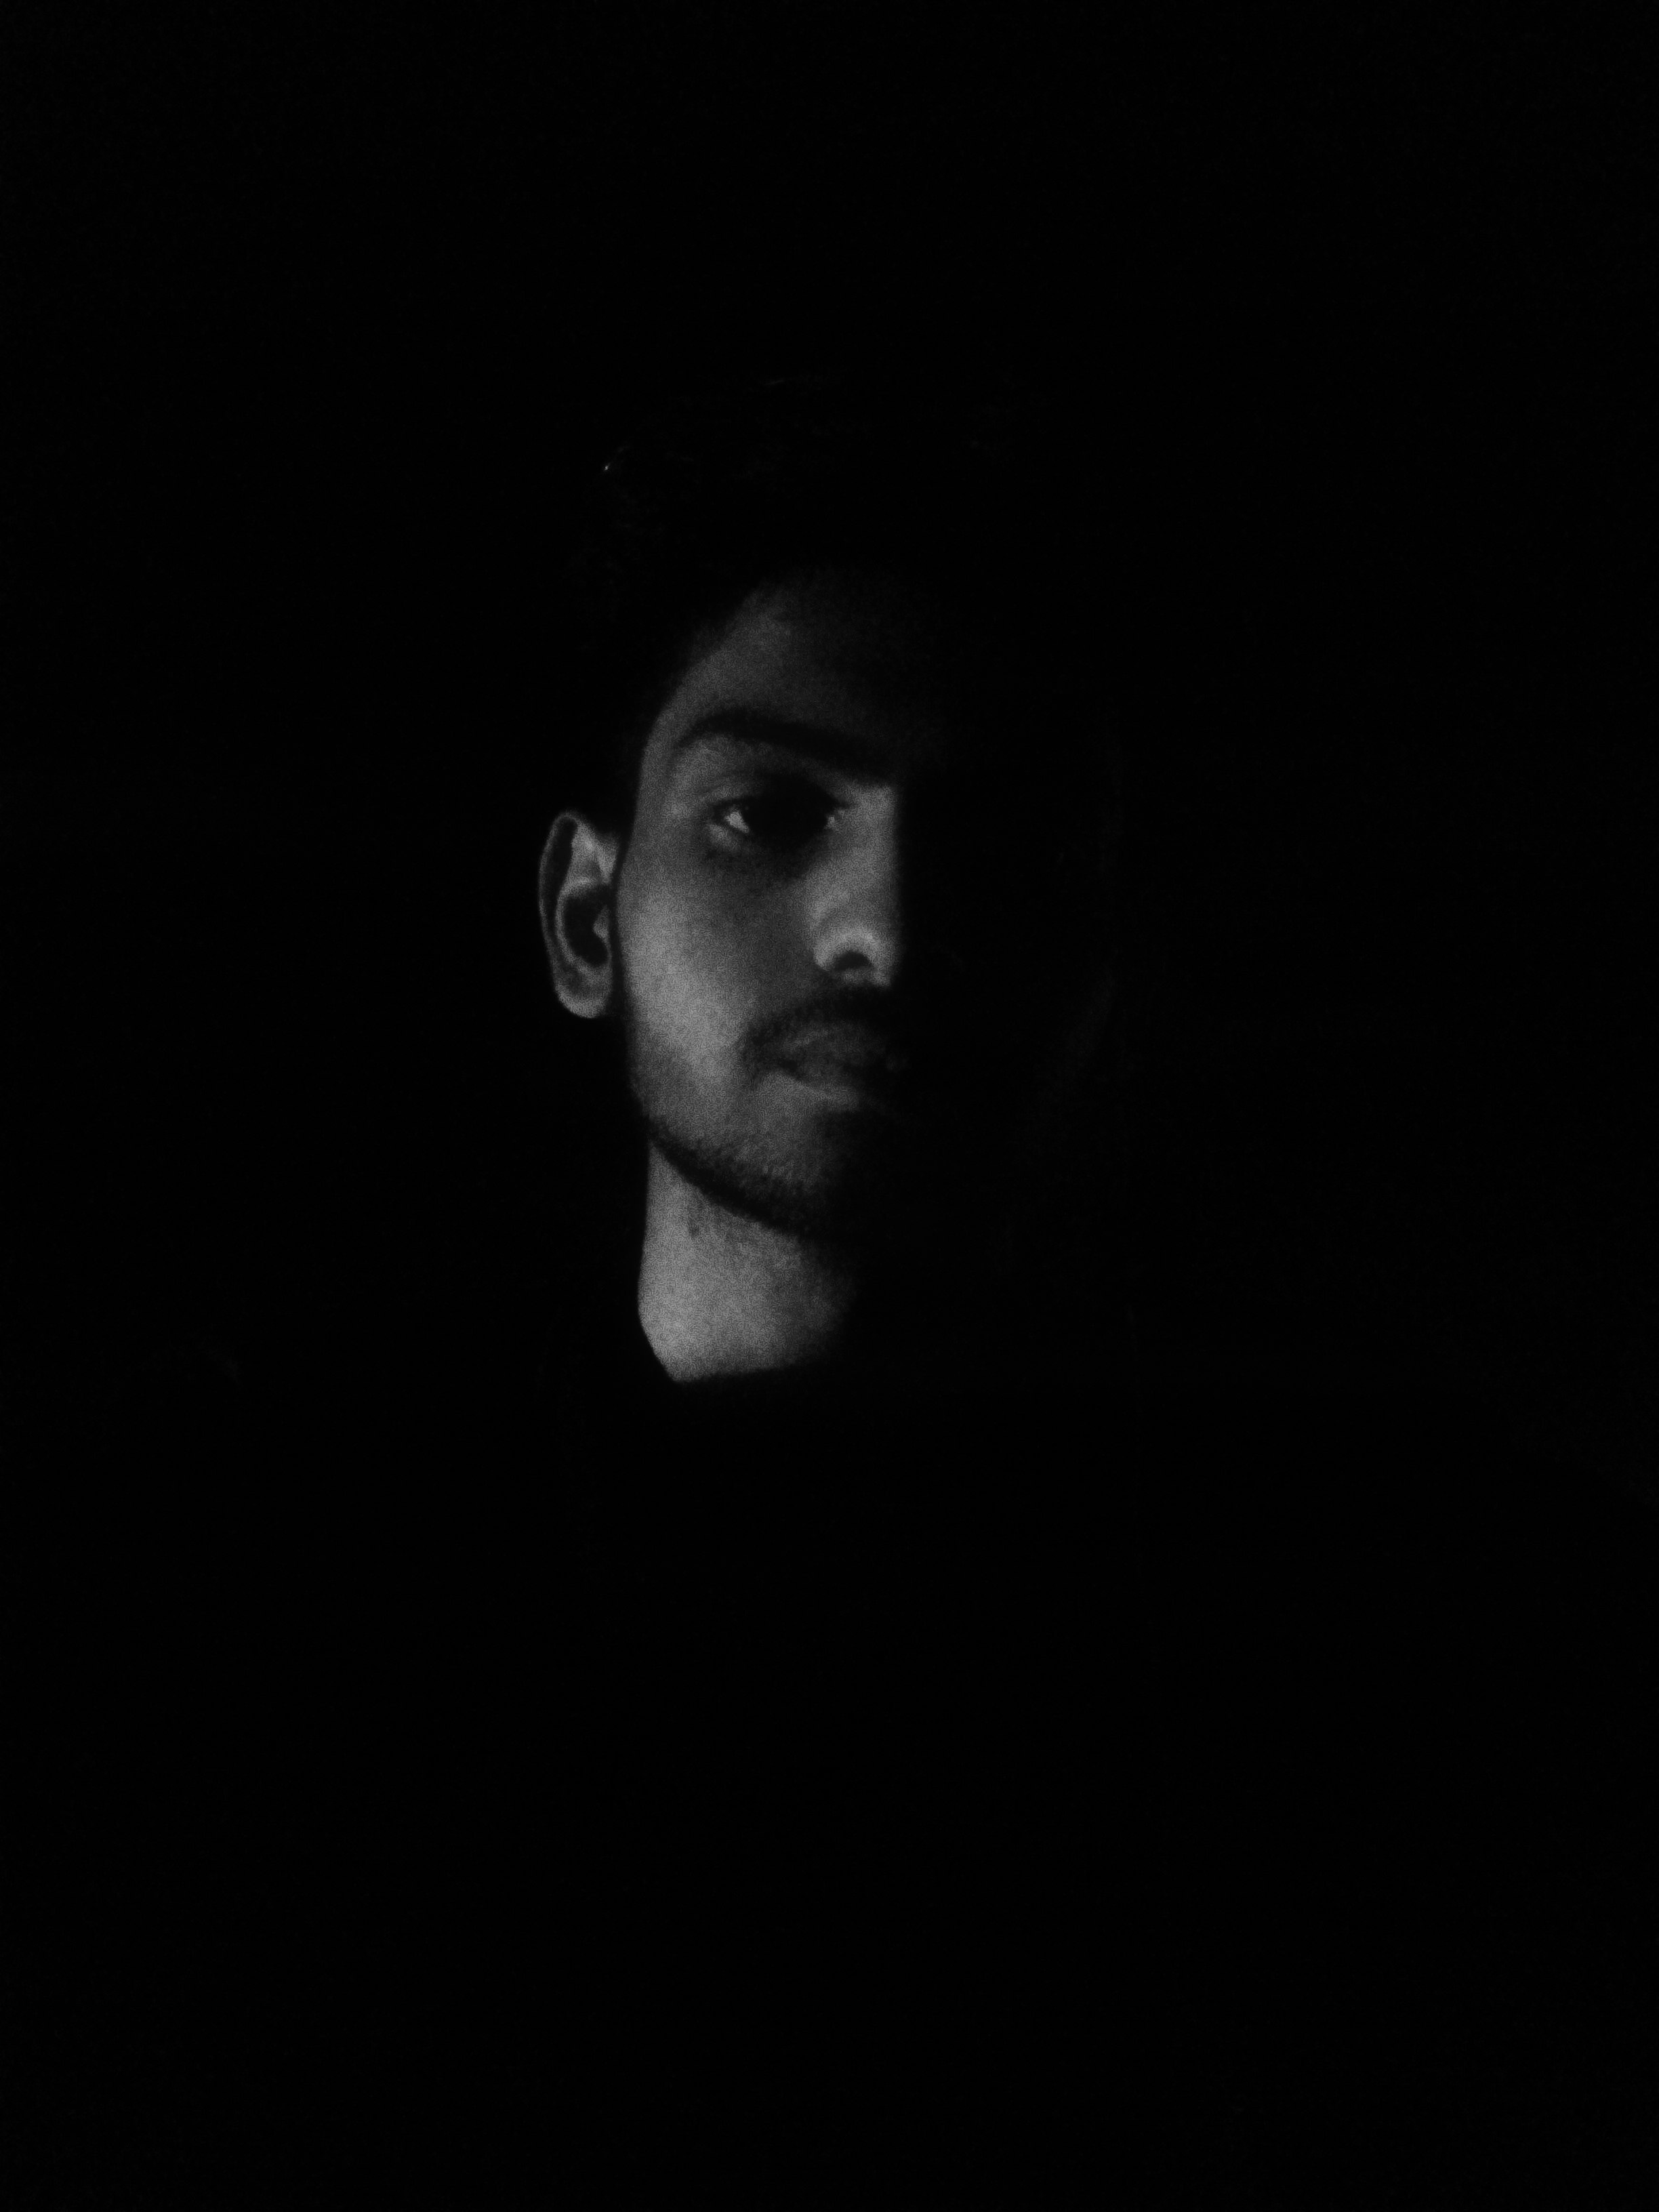 Human dark portrait